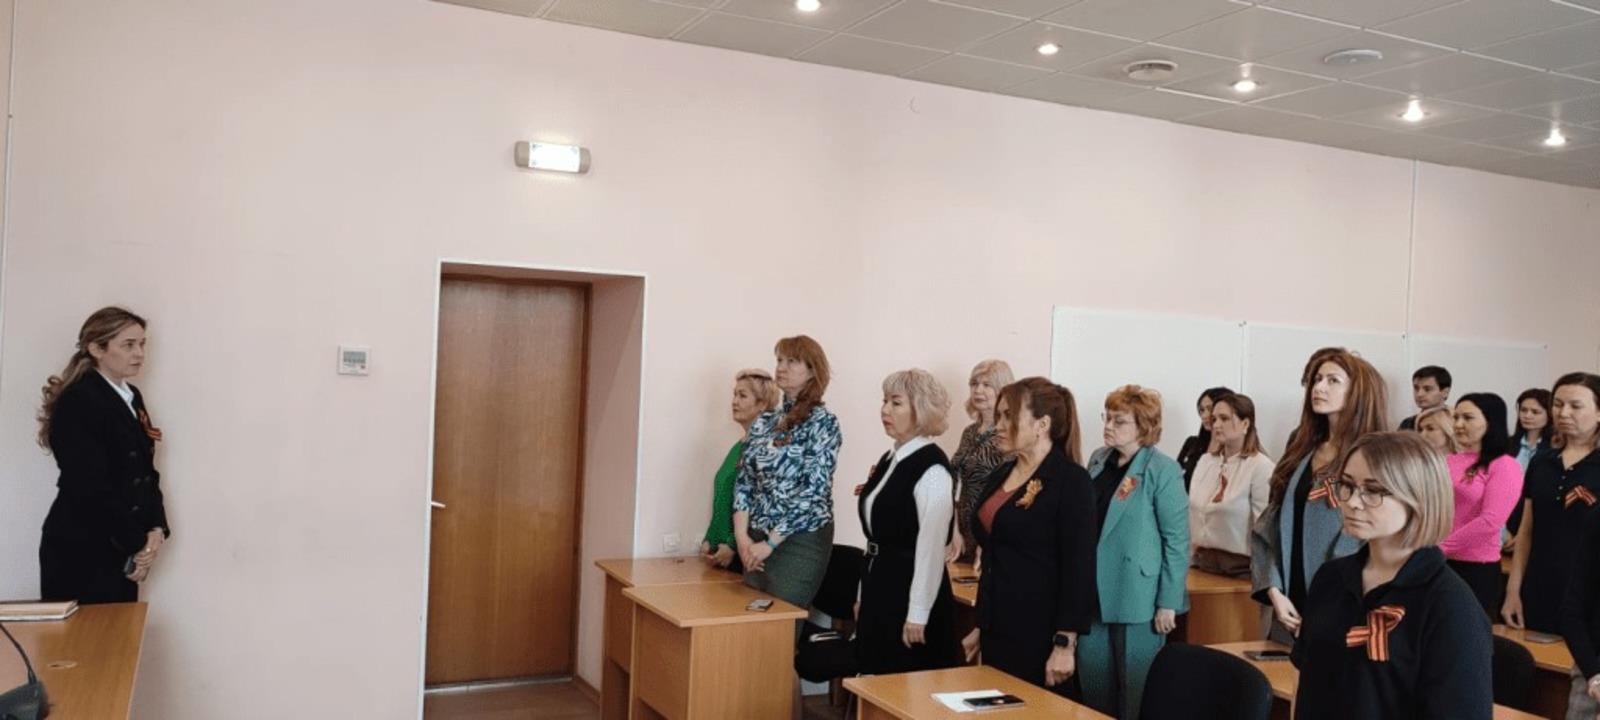 Общереспубликанская минута молчания объединила тысячи жителей Башкирии